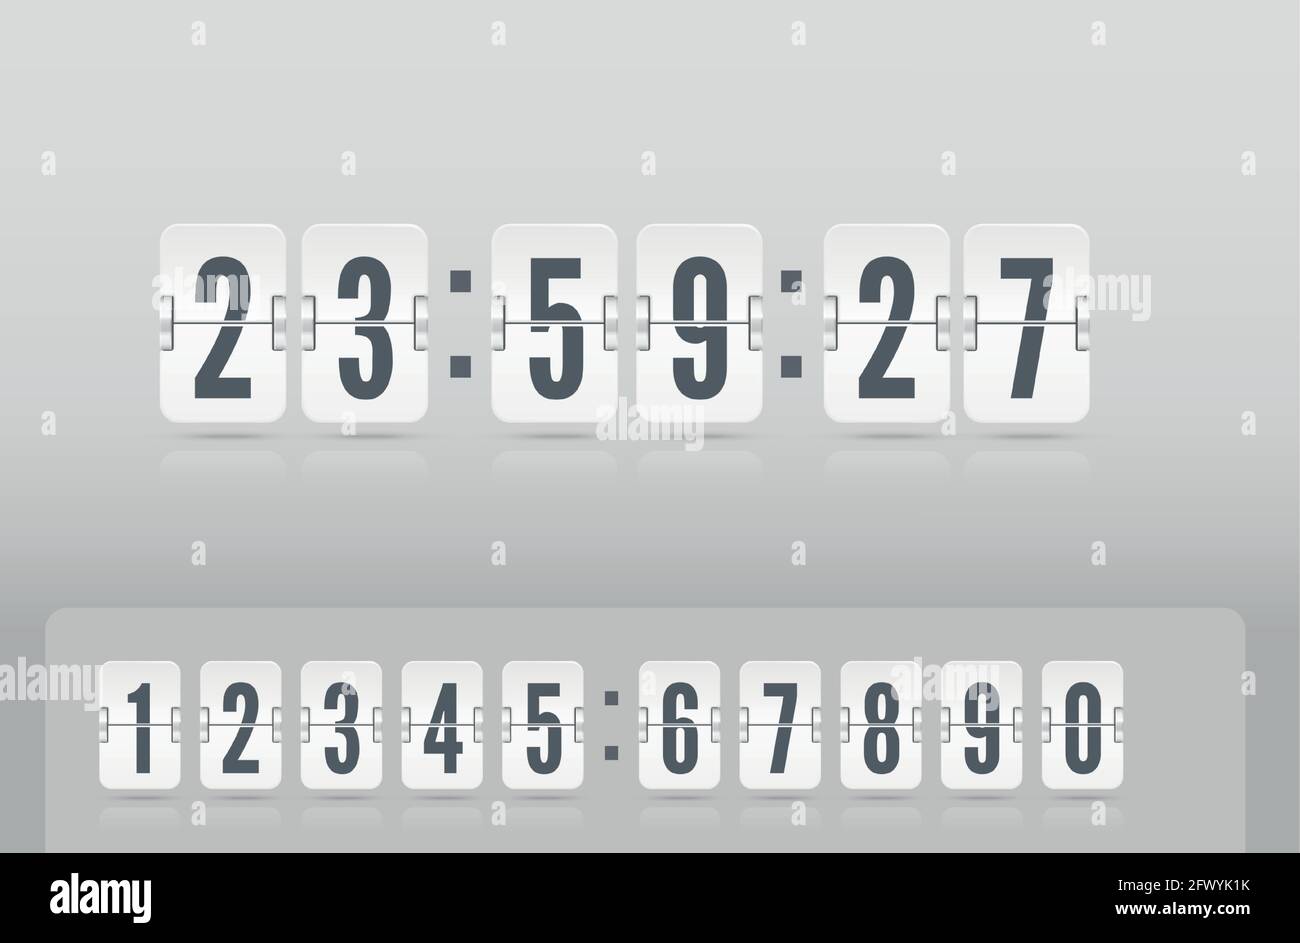 Analoger Countdown-Timer für das Flughafenboard mit Stunden- und  Minutenanzeige. Vintage Flip Clock Zeitzähler Vektor-Vorlage. Weiße  Anzeigetafel mit Zahlen und Reflexionen, die auf hellem Hintergrund  schweben Stock-Vektorgrafik - Alamy